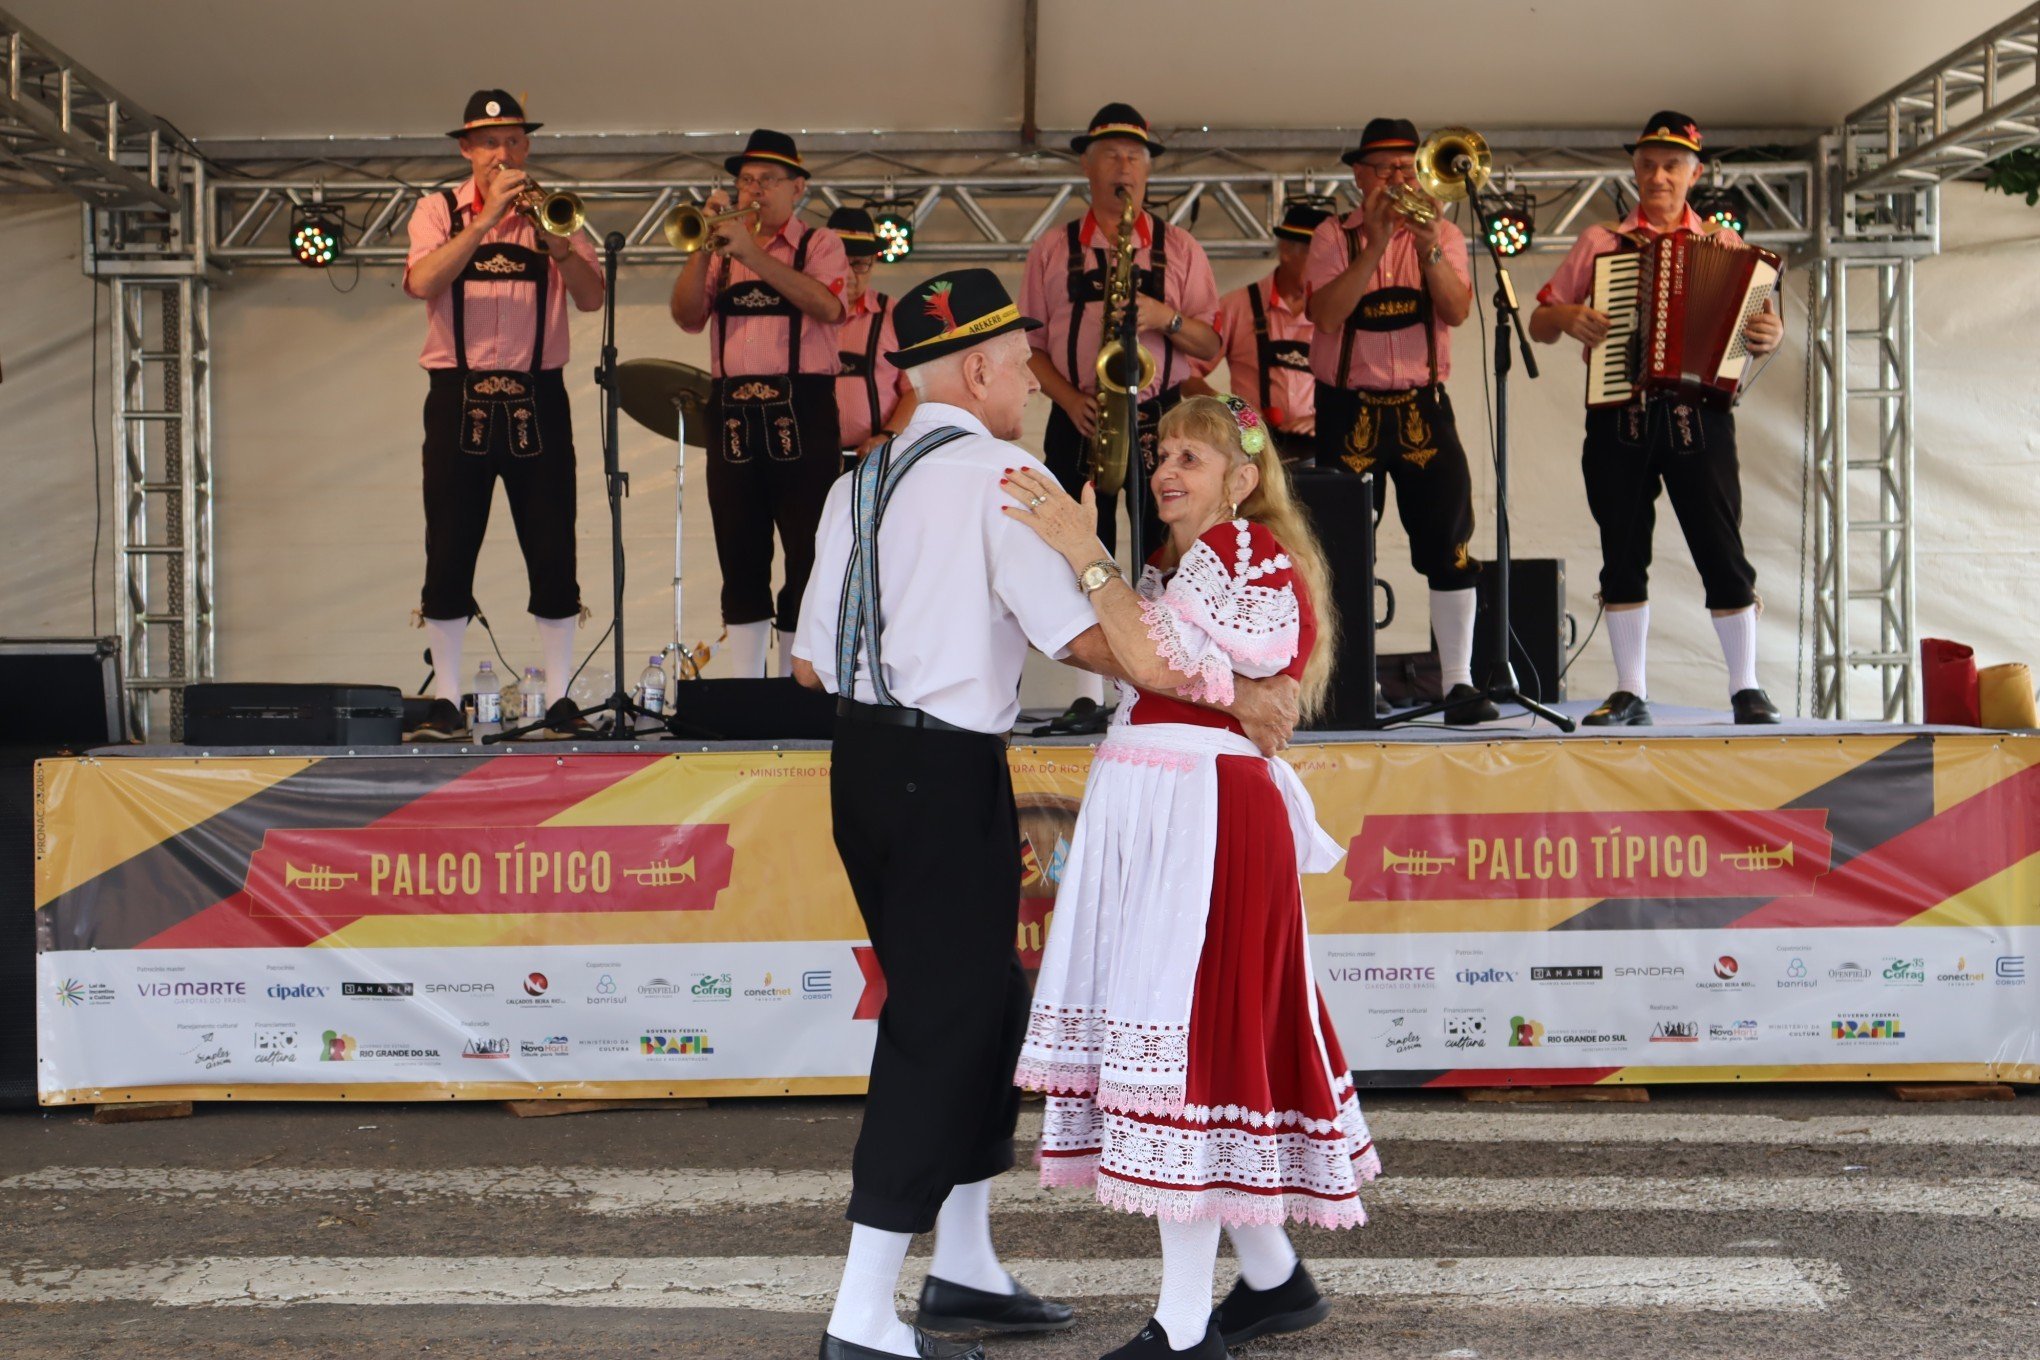 DEZEMBERFEST: Confira as atrações deste domingo da celebração que une cultura germânica, esportes e música